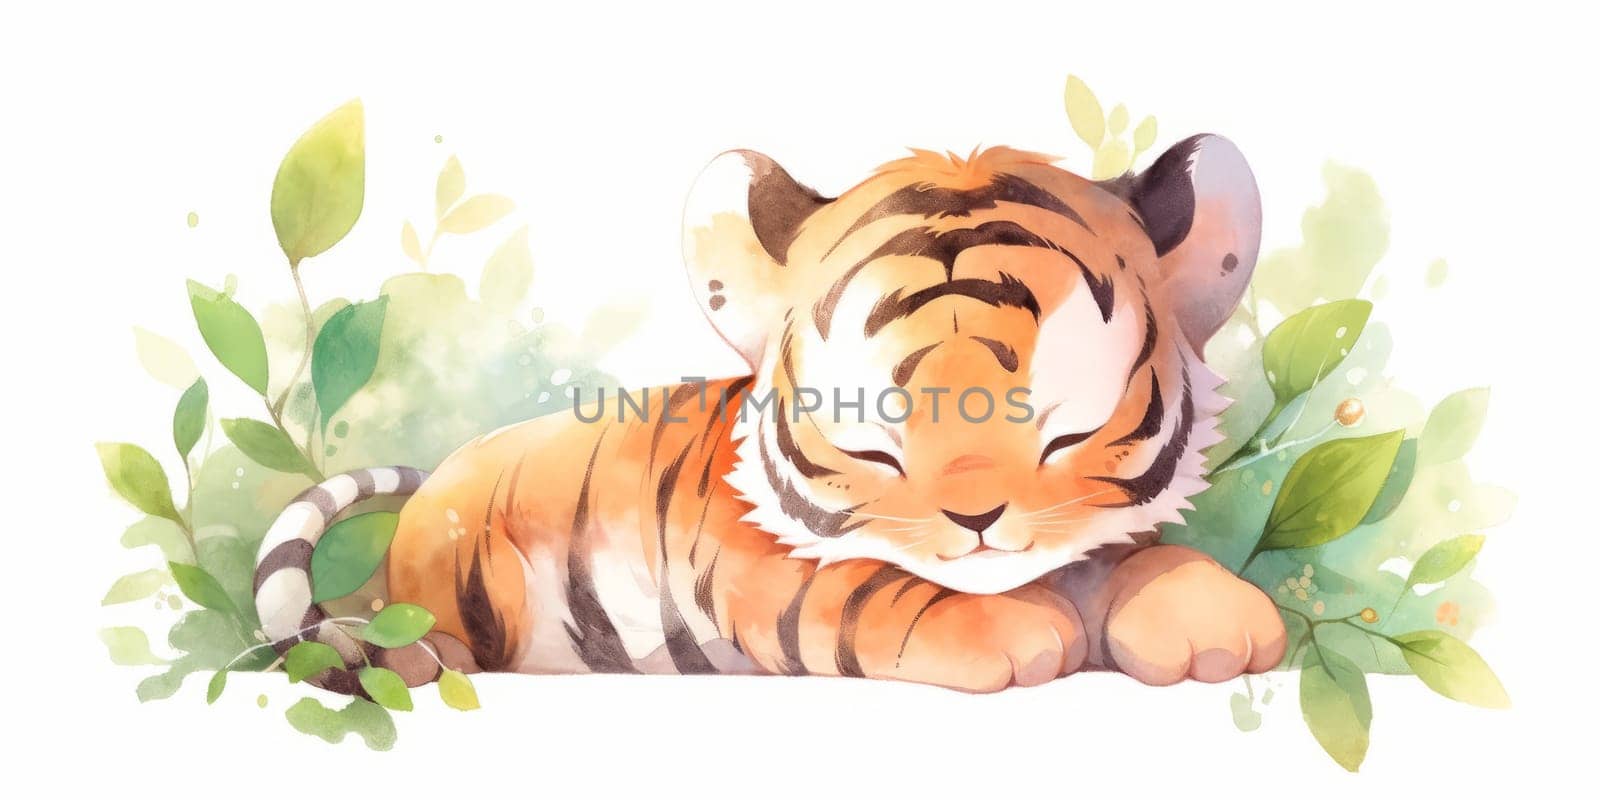 Cute kawaii baby tiger hand drawn watercolor illustration